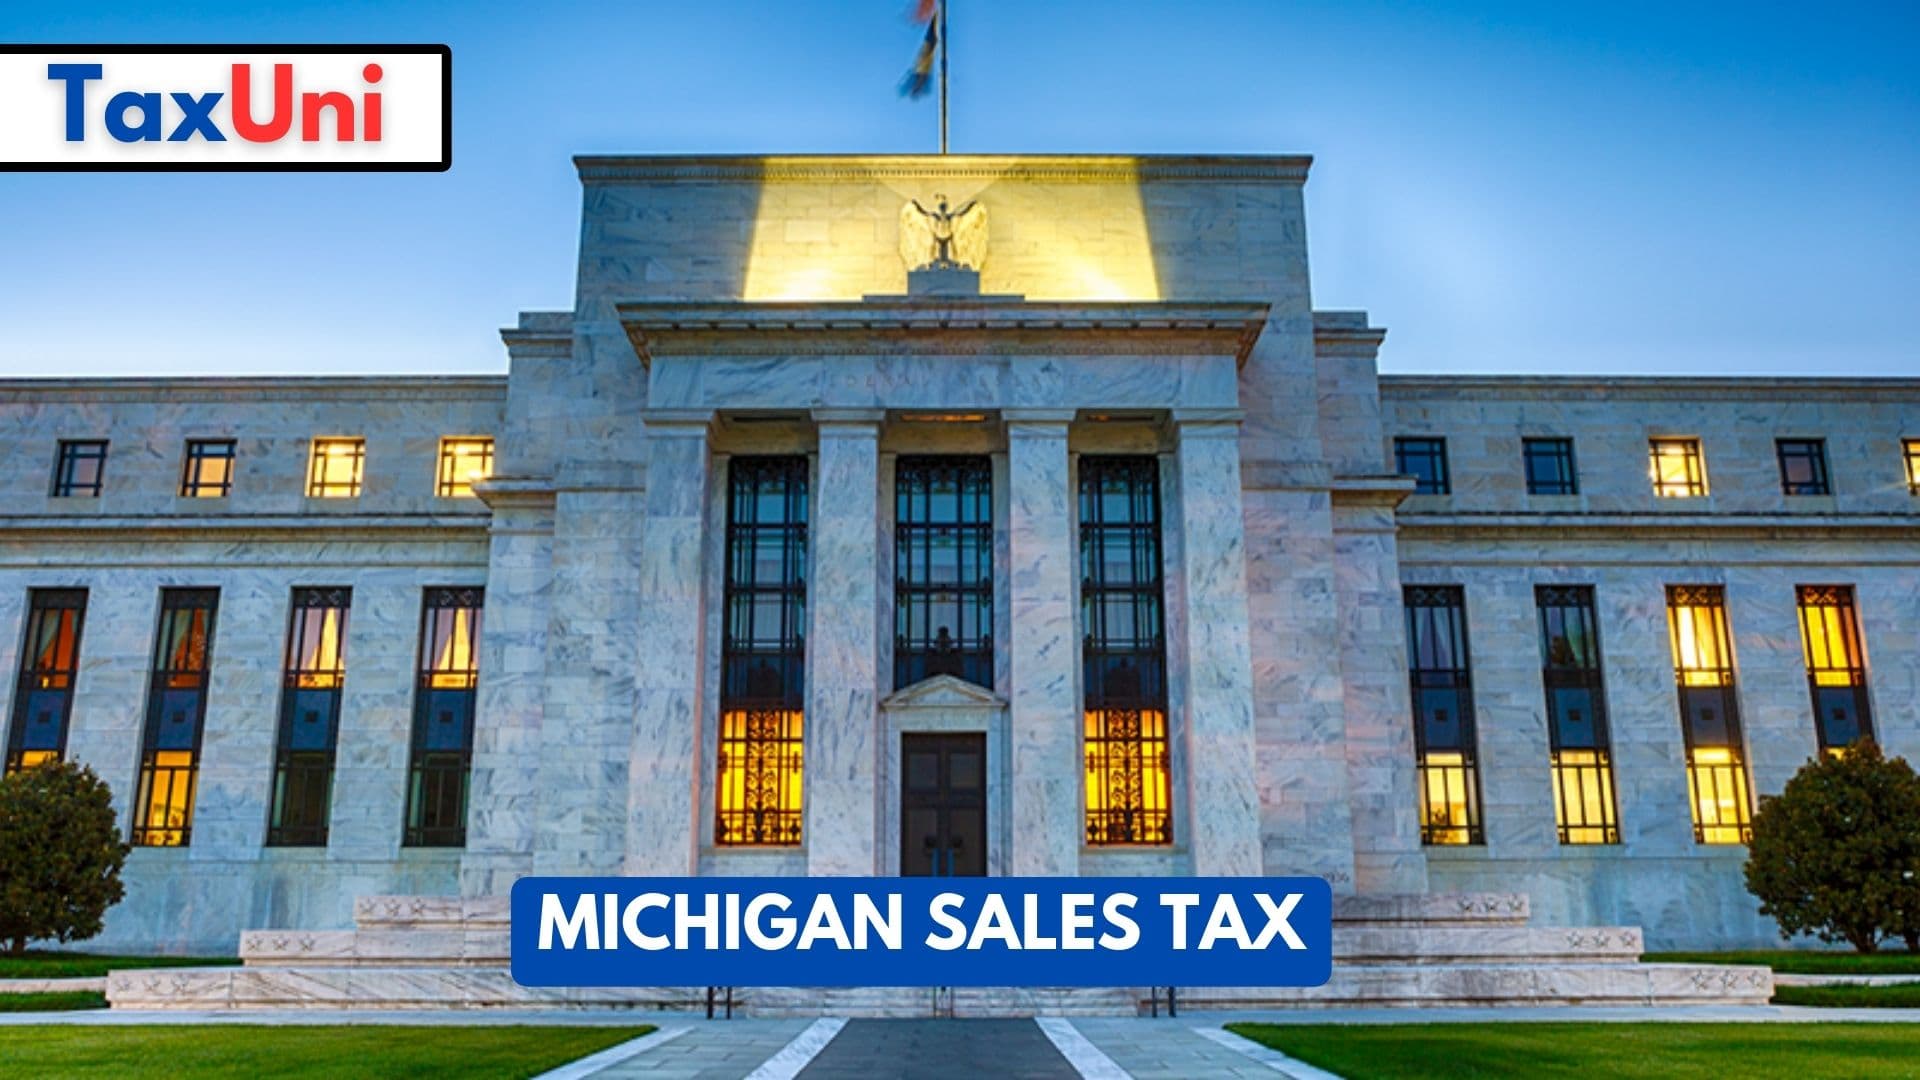 Michigan Sales Tax